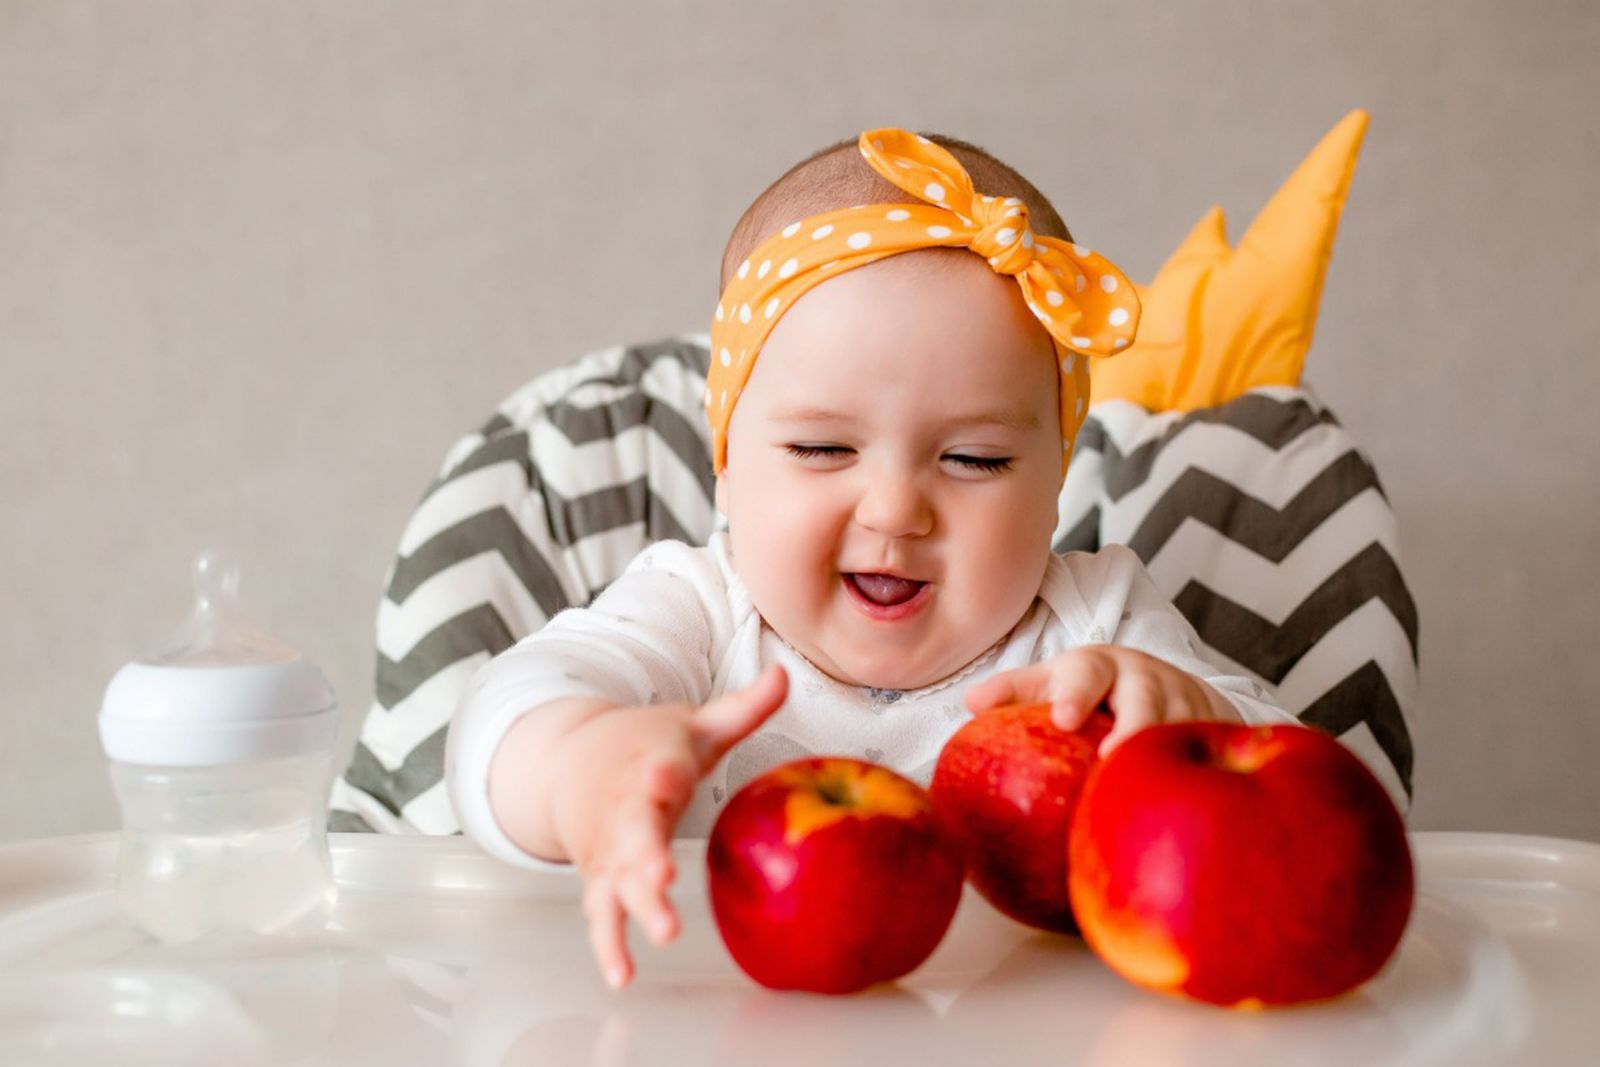 Chú ý khi cho trẻ dưới 1 tuổi ăn hoa quả